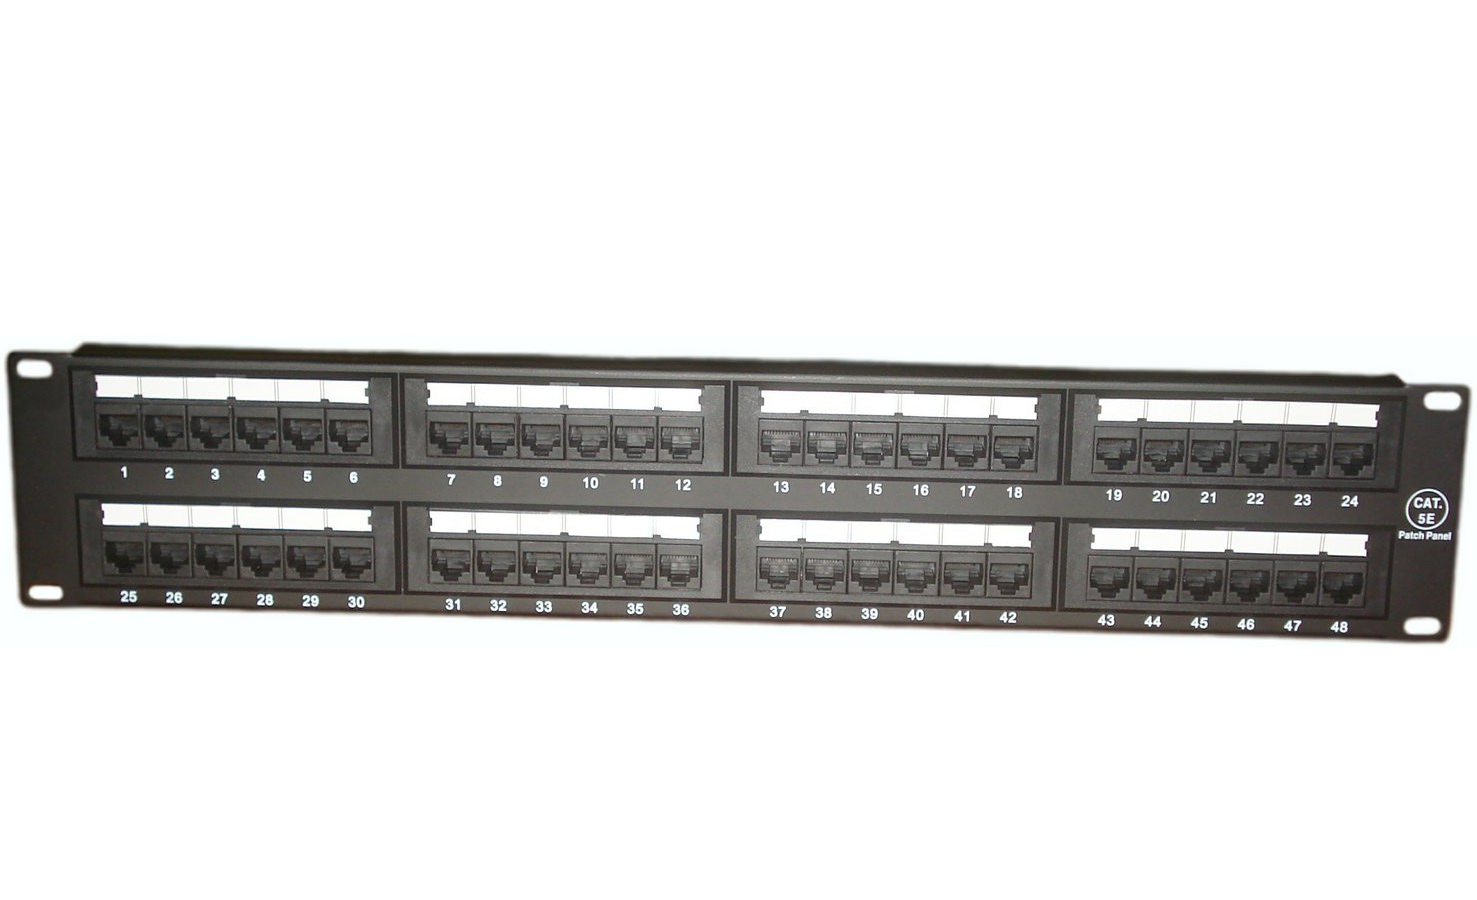 Патч-панель, 2U, 48 портов RJ45, Cat. 5е (003-100006): Патч-панель